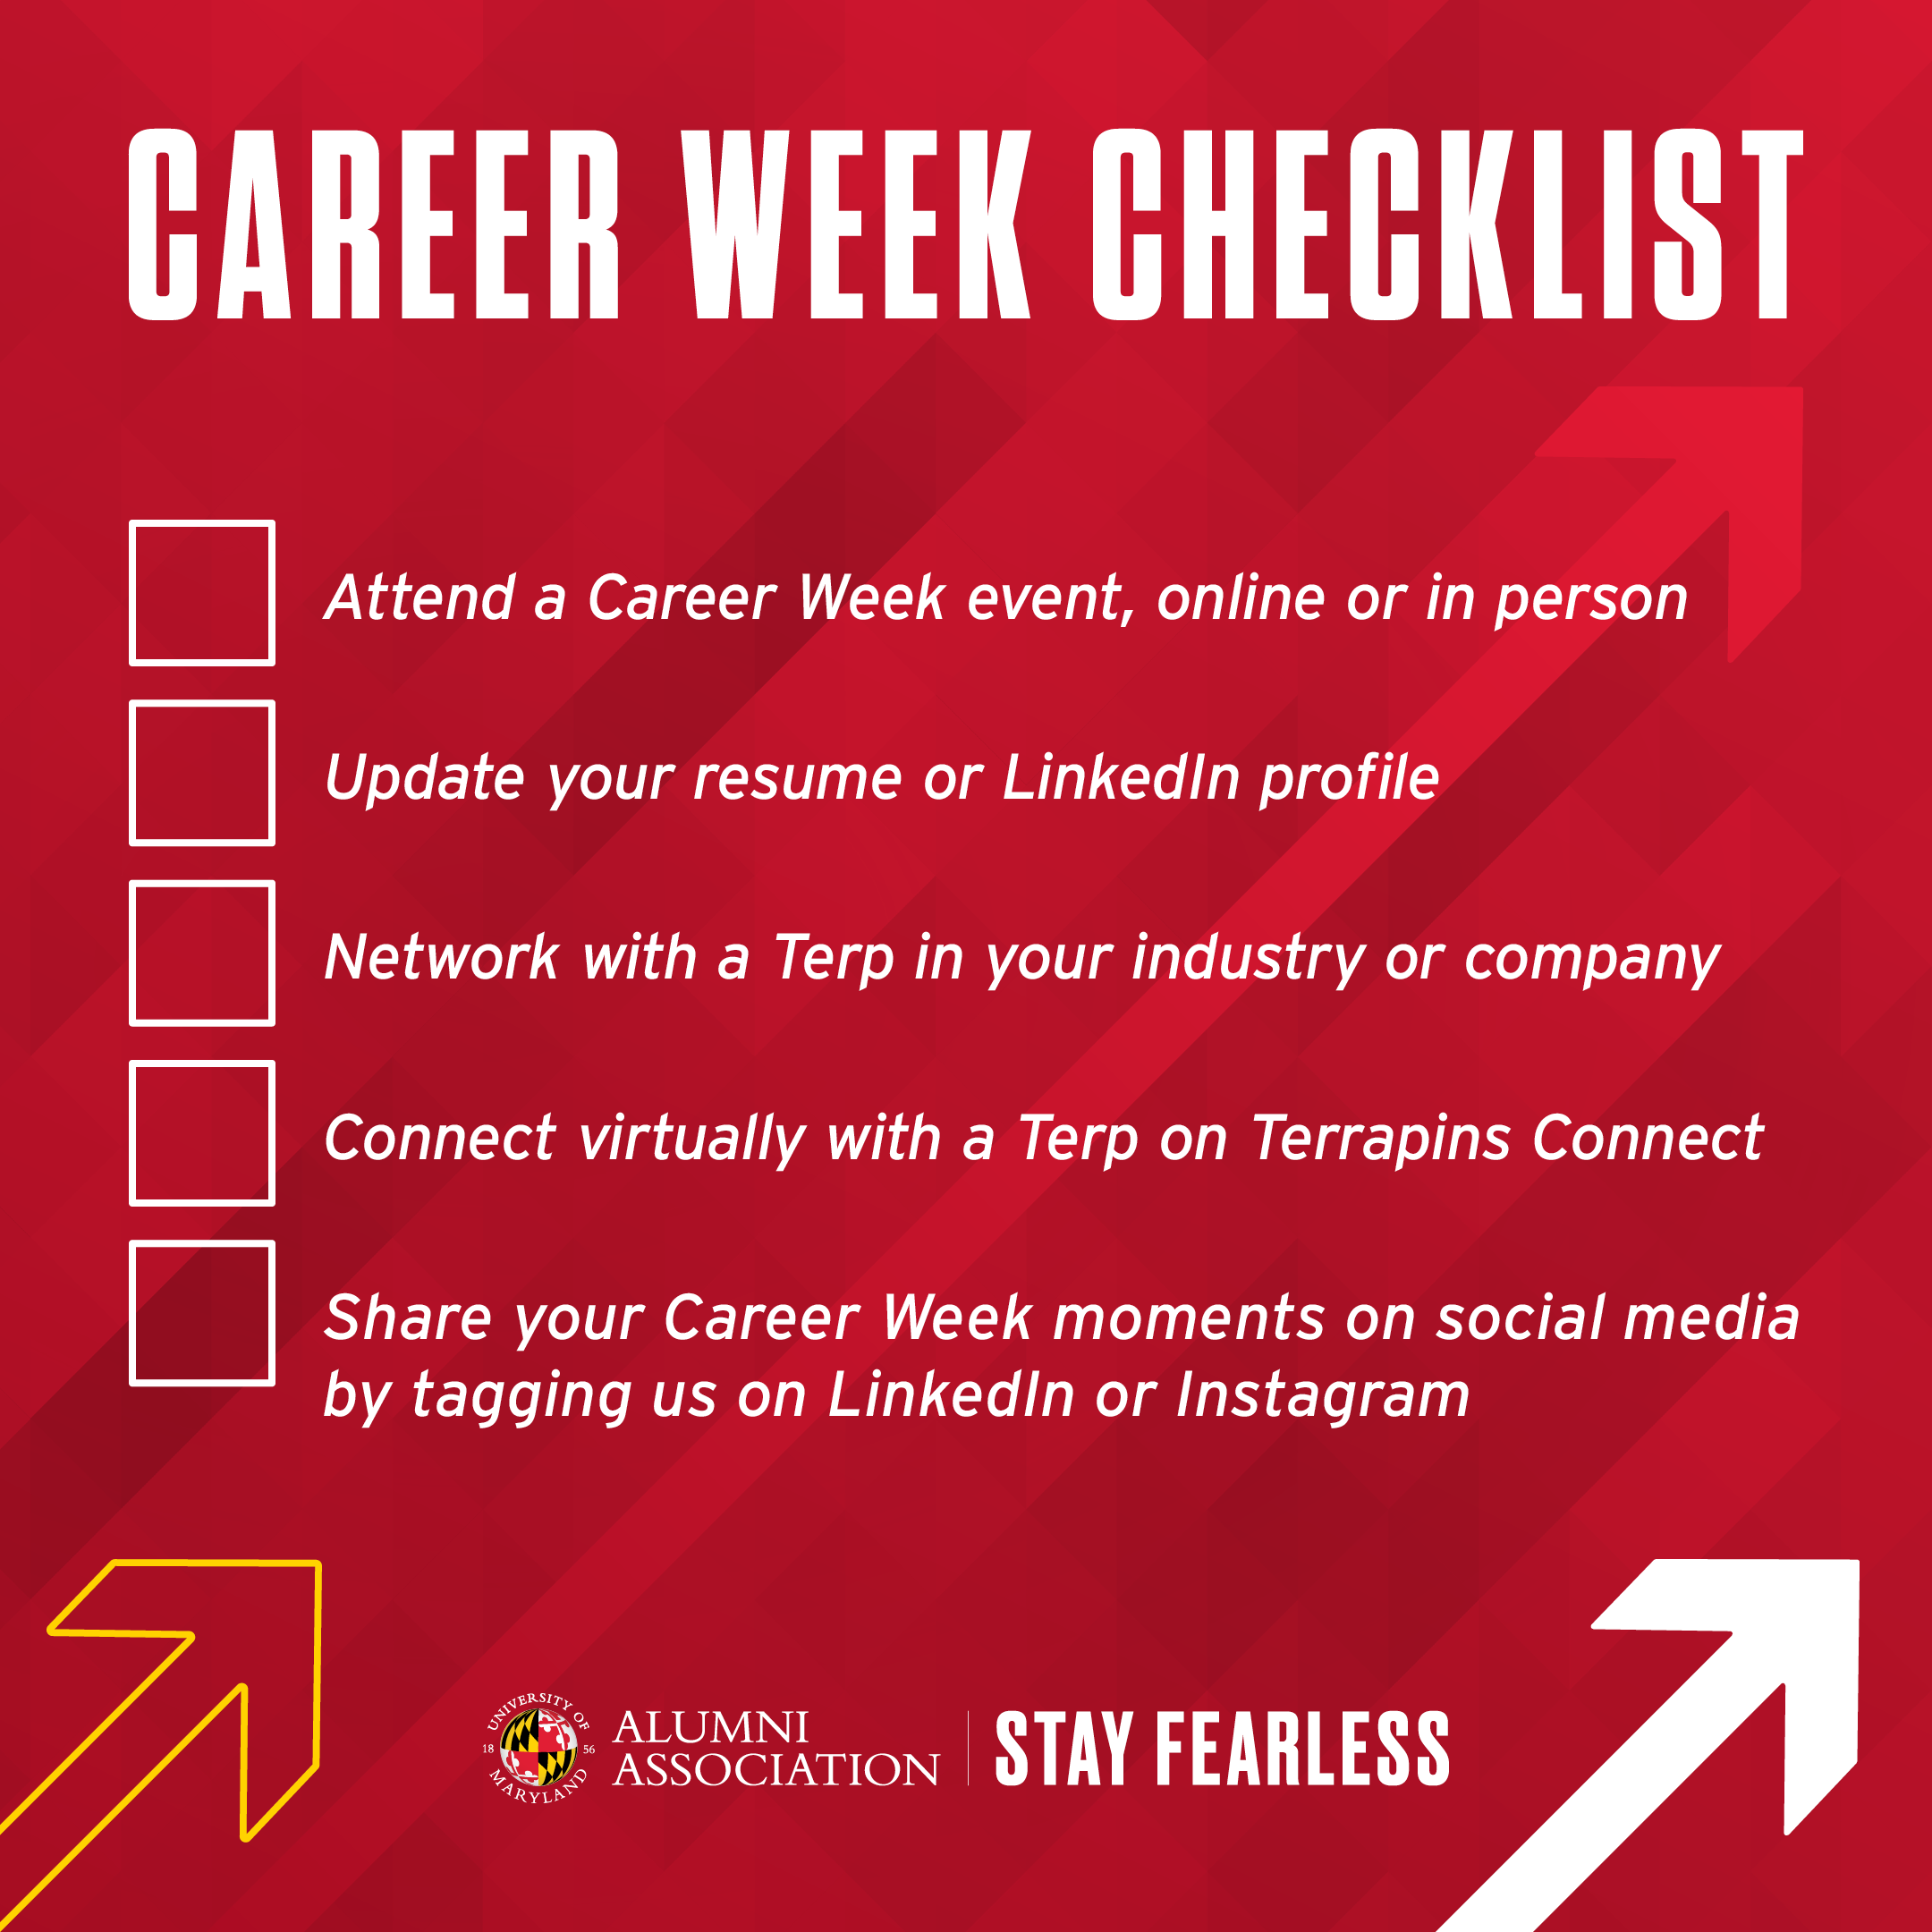 Career Week Checklist